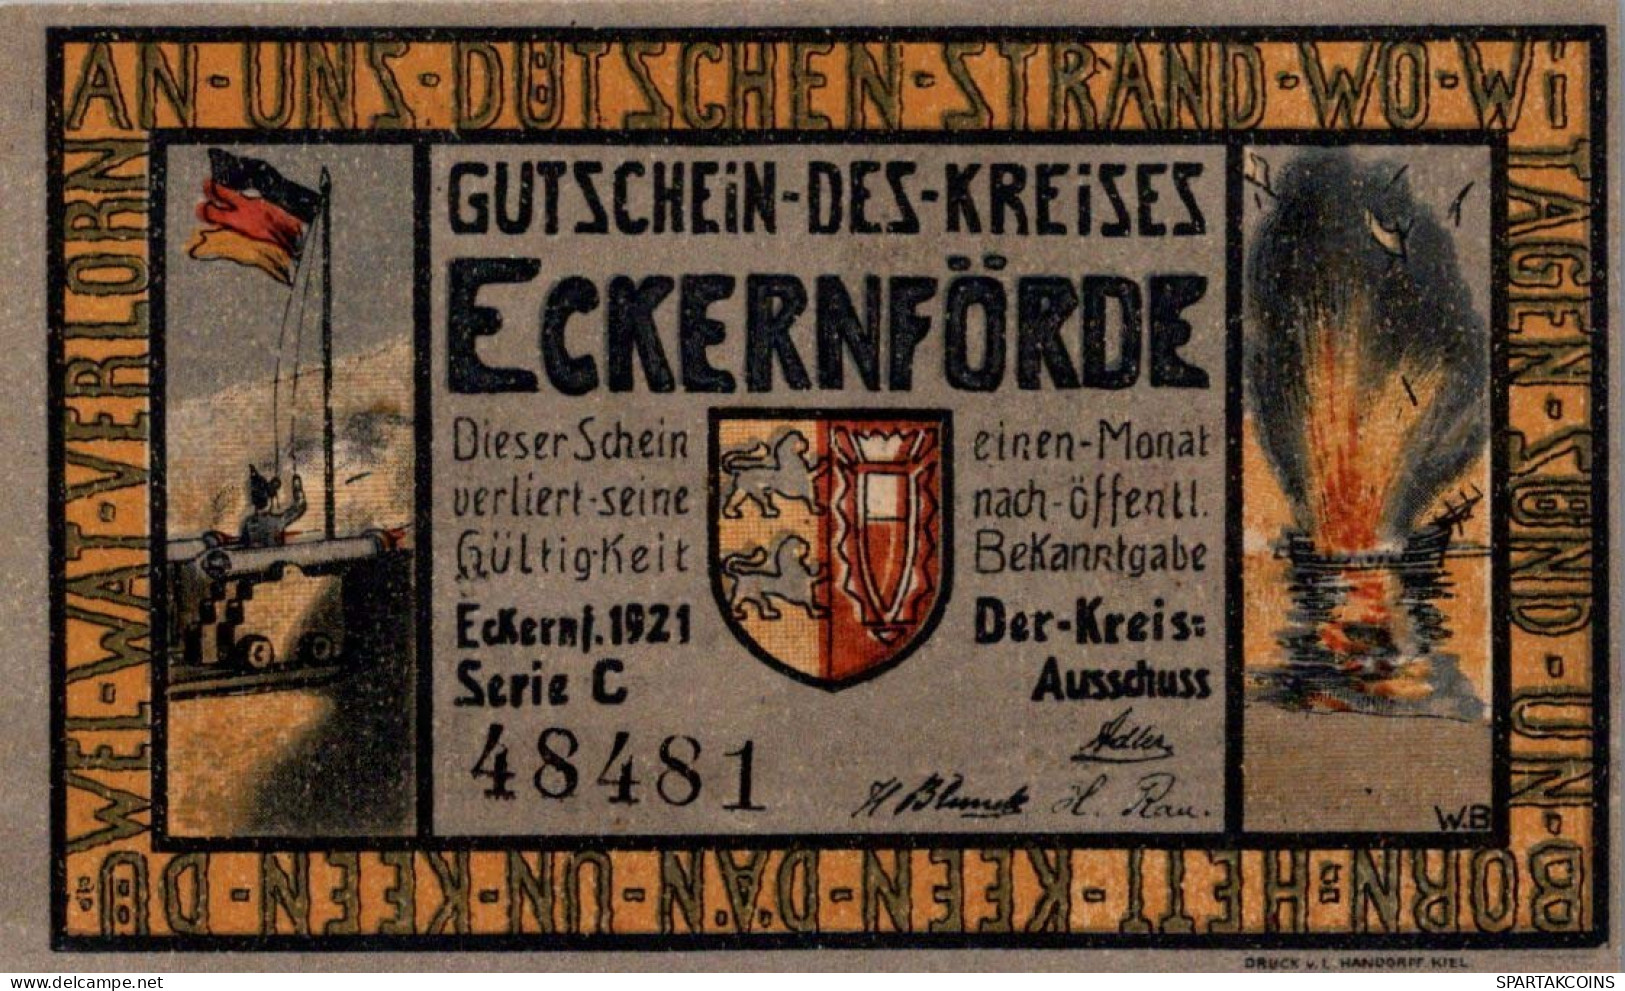 1 MARK 1921 Stadt ECKERNFoRDE Schleswig-Holstein UNC DEUTSCHLAND Notgeld #PB028.V - Lokale Ausgaben